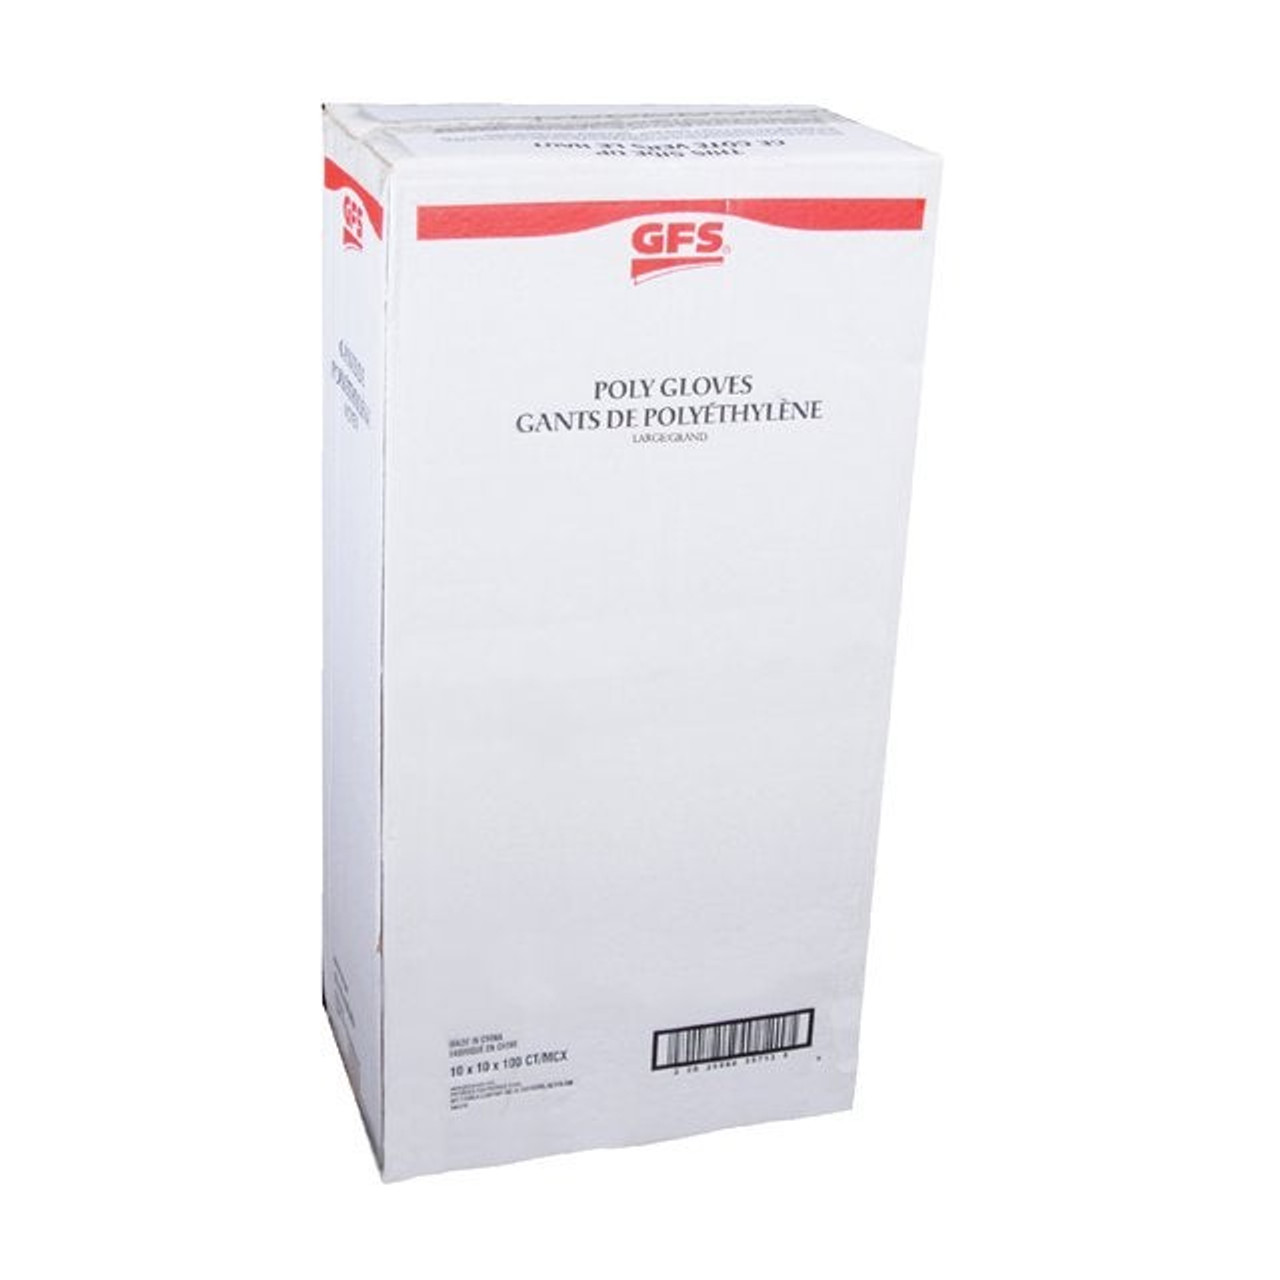 Gordon Choice Extra Large Clear Plastic Reclosable Freezer Bags, 13 x 15.6in | 100UN/Unit, 6 Units/Case